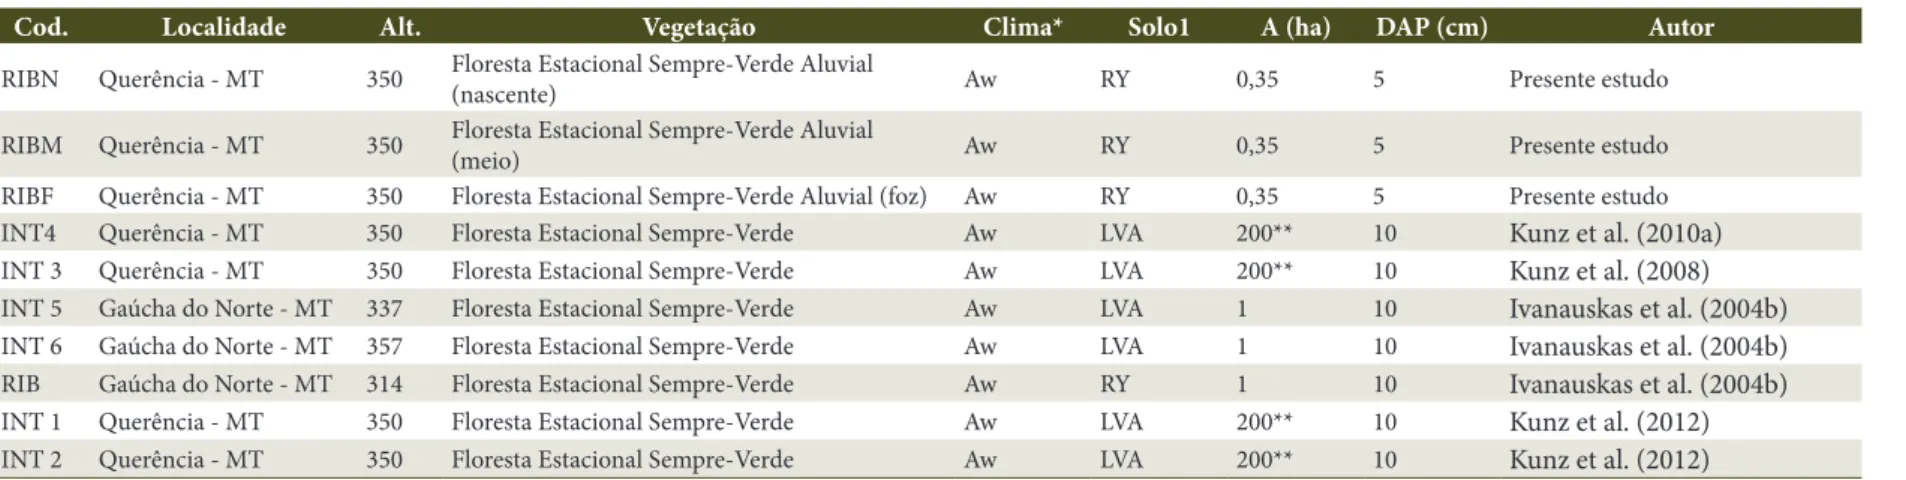 Tabela 1. Informações sobre as áreas utilizadas na comparação florística entre as florestas do Alto Xingu